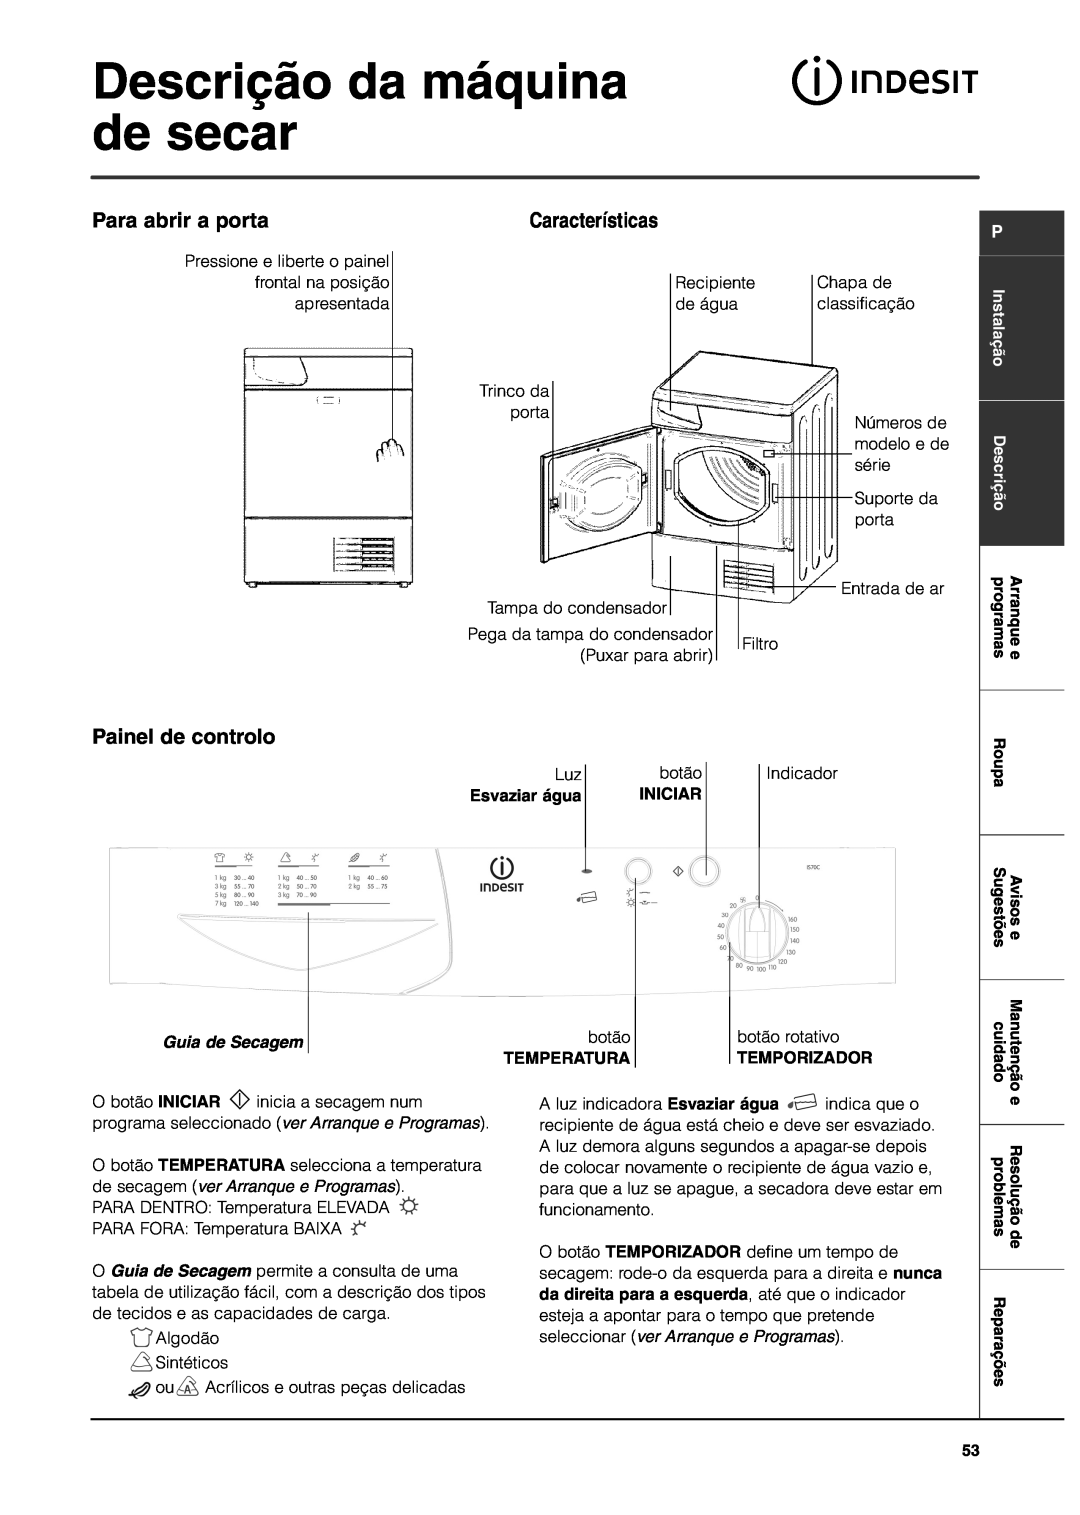 Indesit IS70C Descrição da máquina de secar, Para abrir a porta, Características, Painel de controlo, Guia de Secagem 